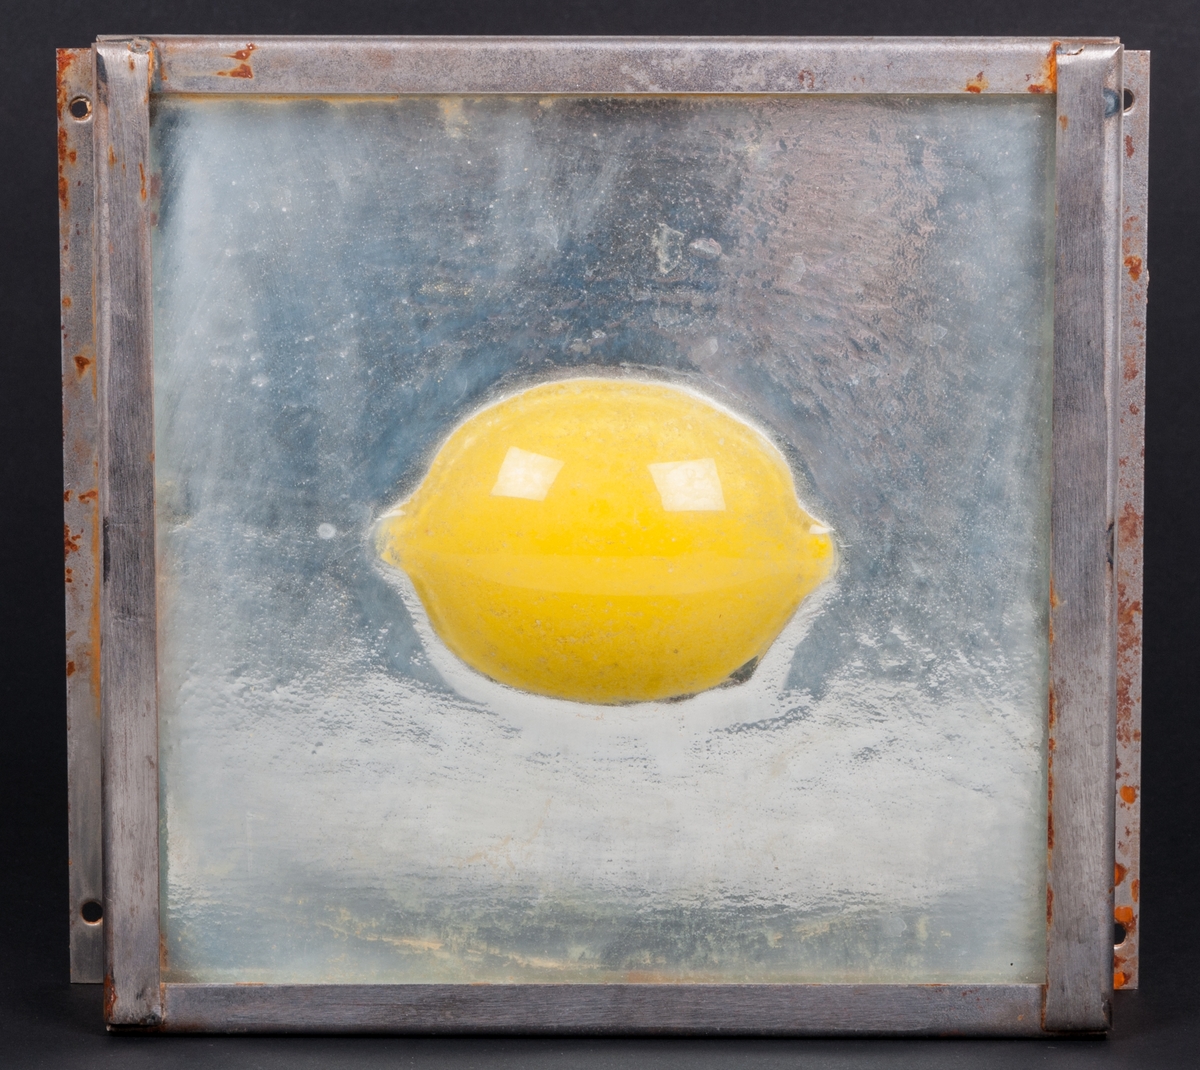 Objekt, skulptur, i glas och stål, "Spegelbild" (alt. Gul citron) av Lena Forslund-van Leer. Kvadratisk, något strukturerad, klar glasskiva med gul citron i relief i centrum. Bakom glasskivan är ett spegelglas. Glasskivorna infattade i obehandlad stålram.